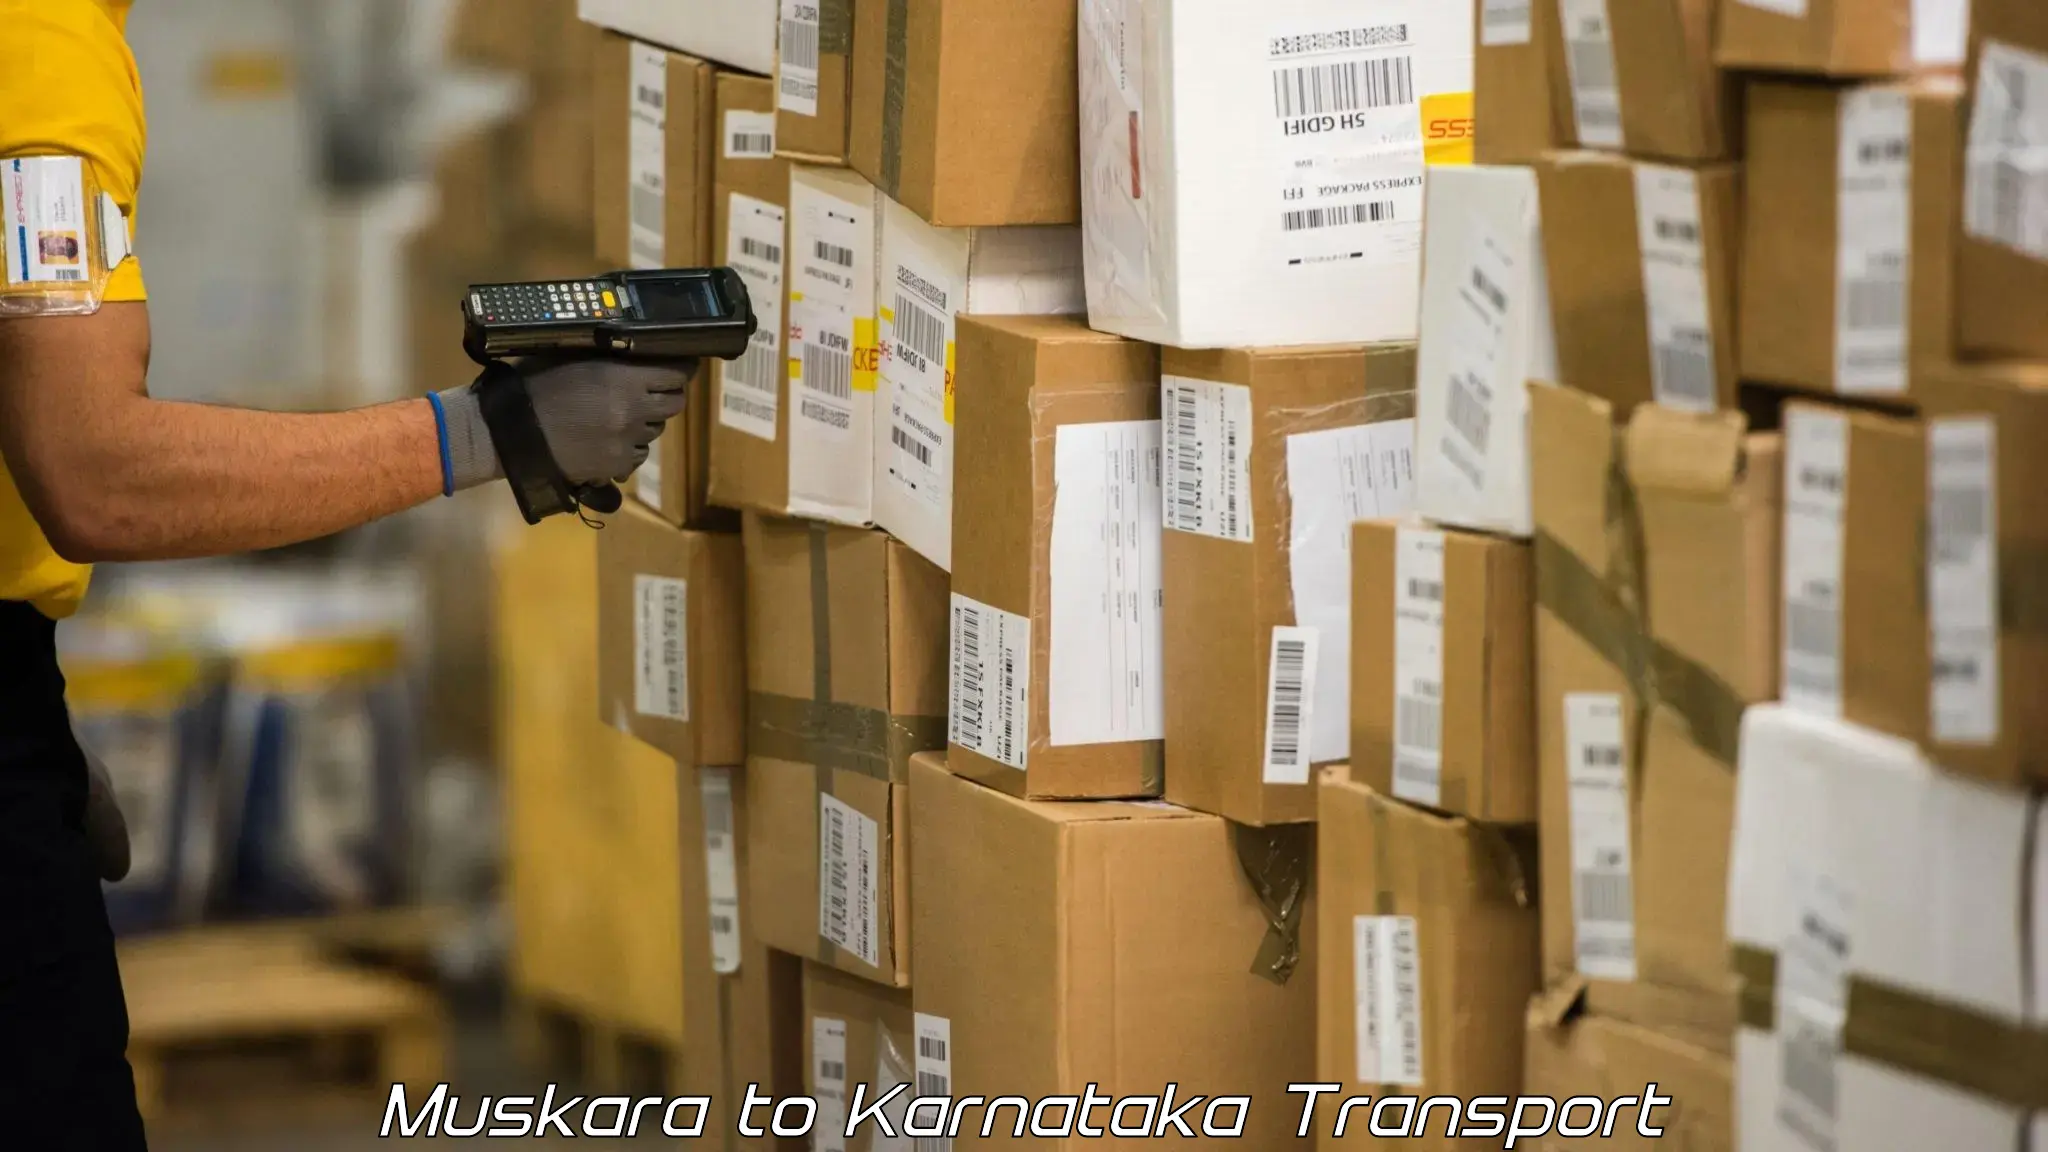 Cargo transportation services Muskara to Guledagudda